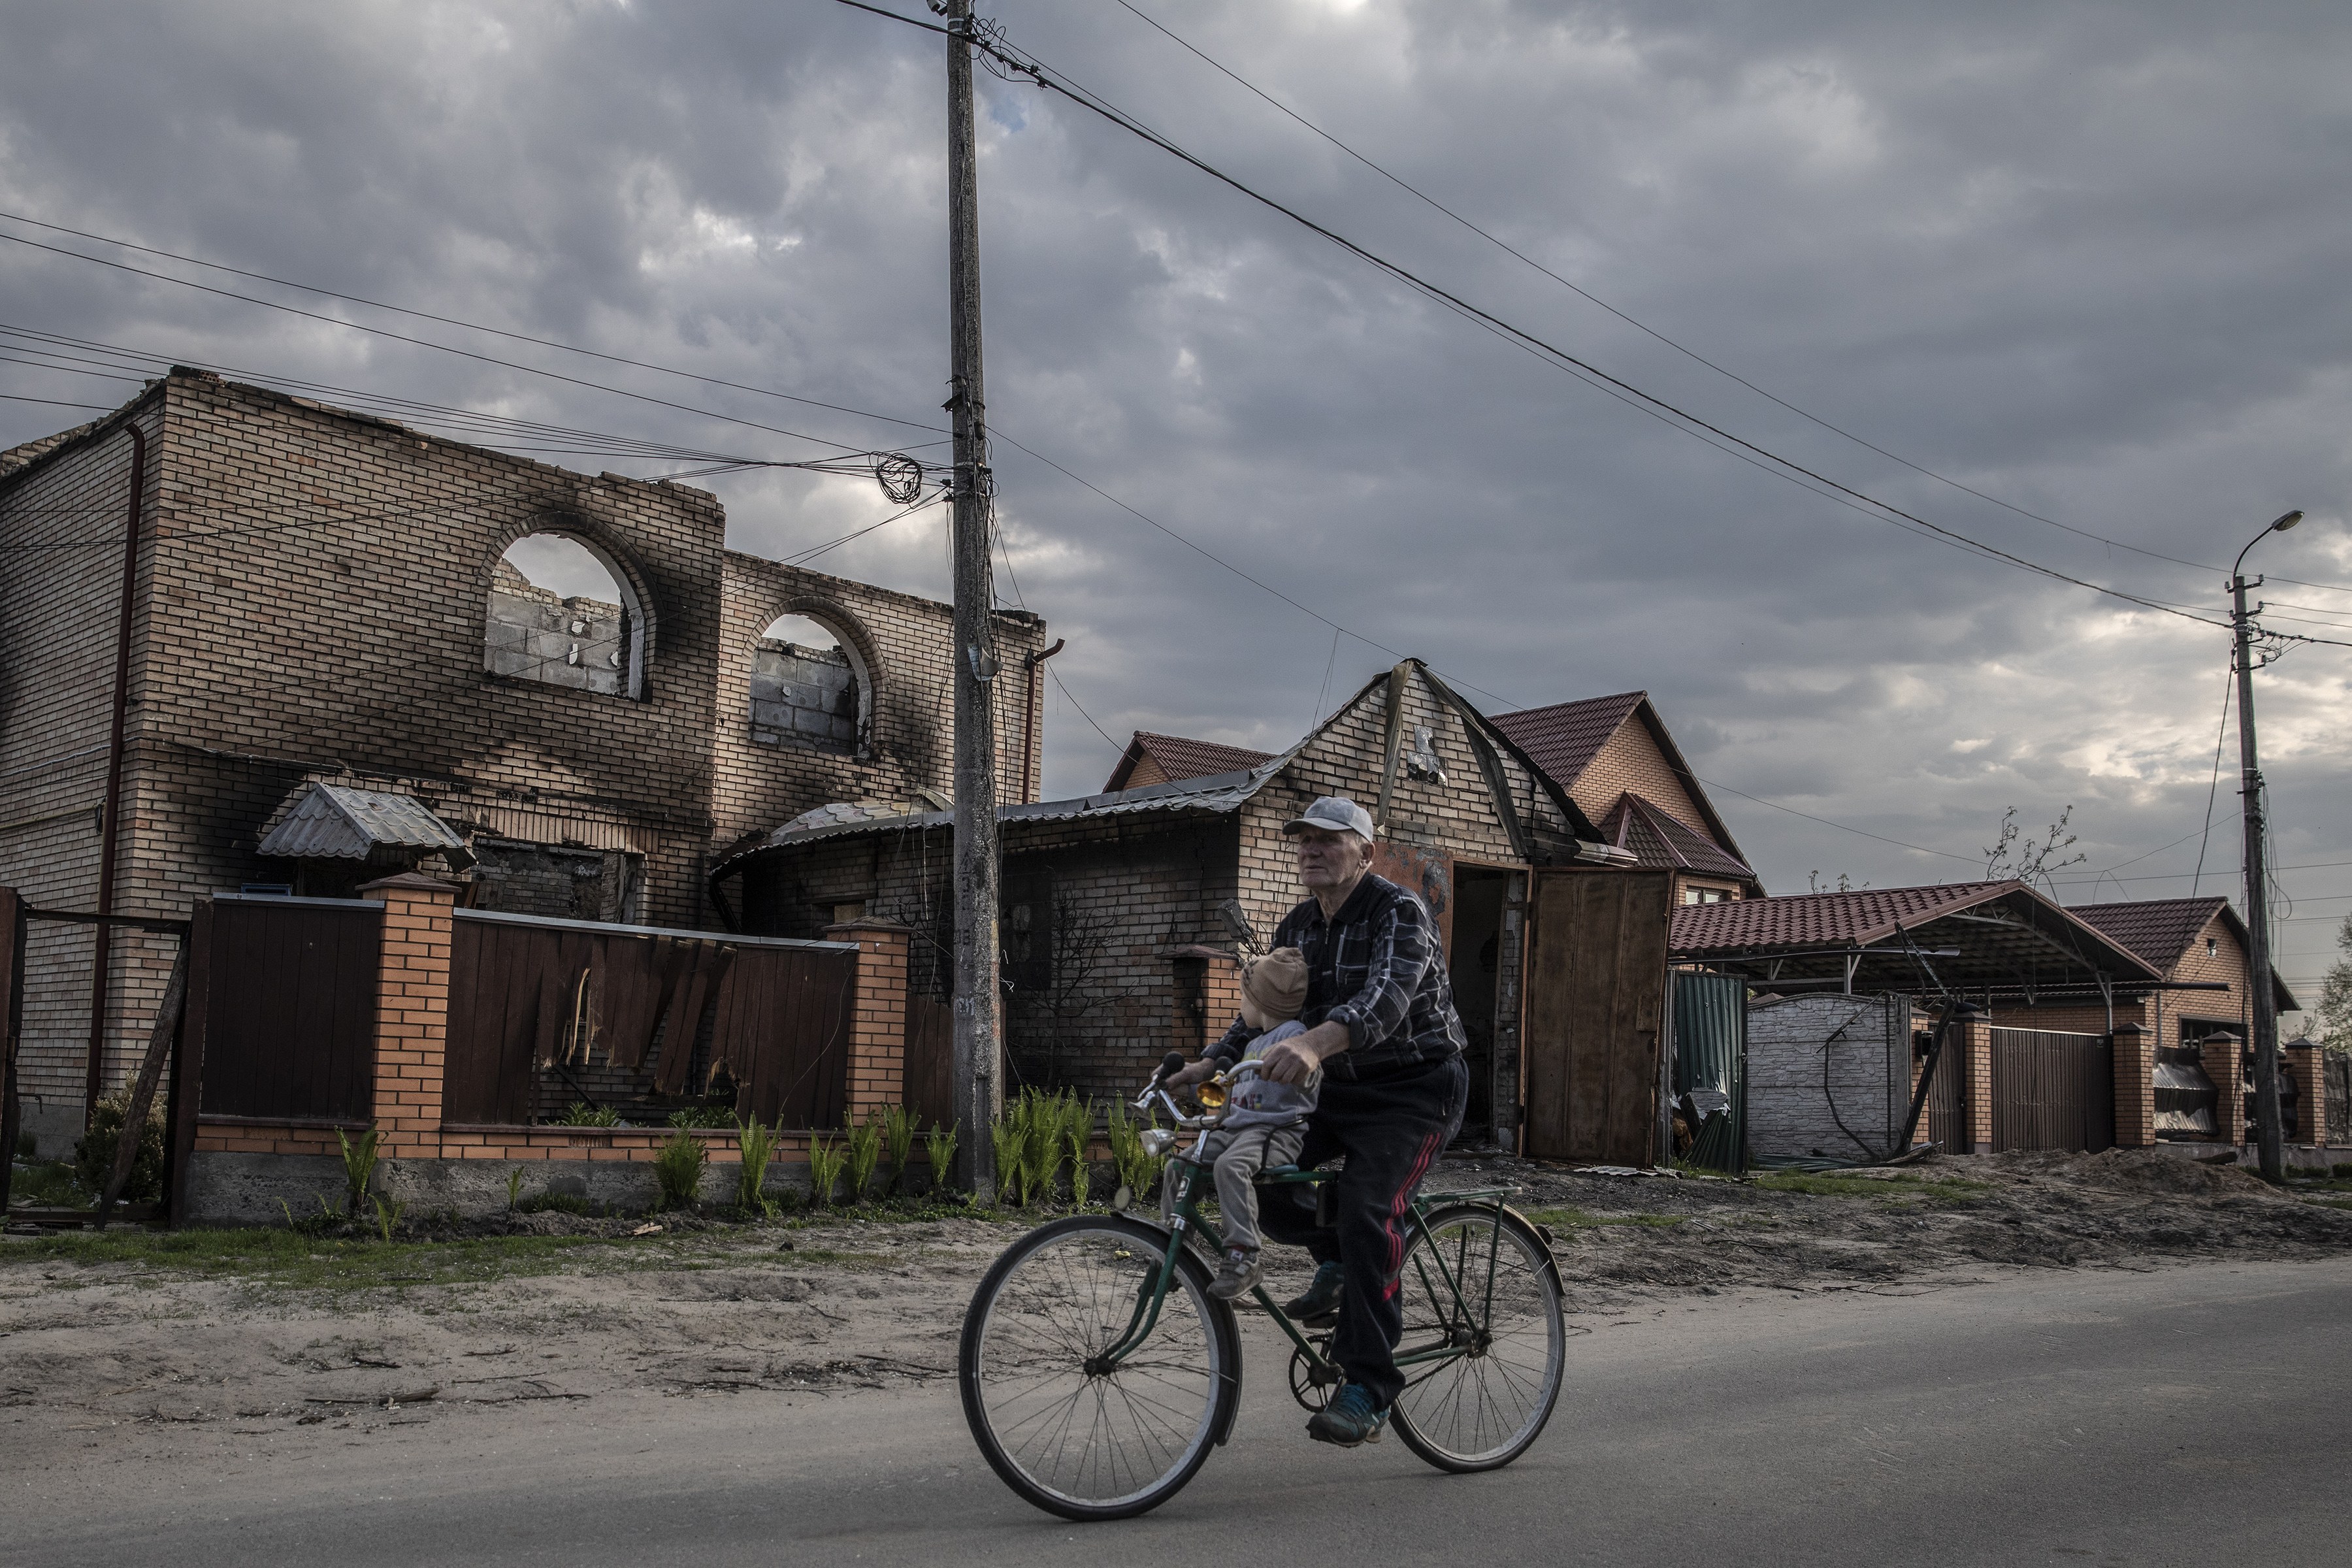 Un hombre conduce una bicicleta con un niño frente a los edificios dañados en Bucha, Ucrania, el domingo 8 de mayo de 2022. (Foto Prensa Libre: Finbarr O'Reilly/The New York Times)